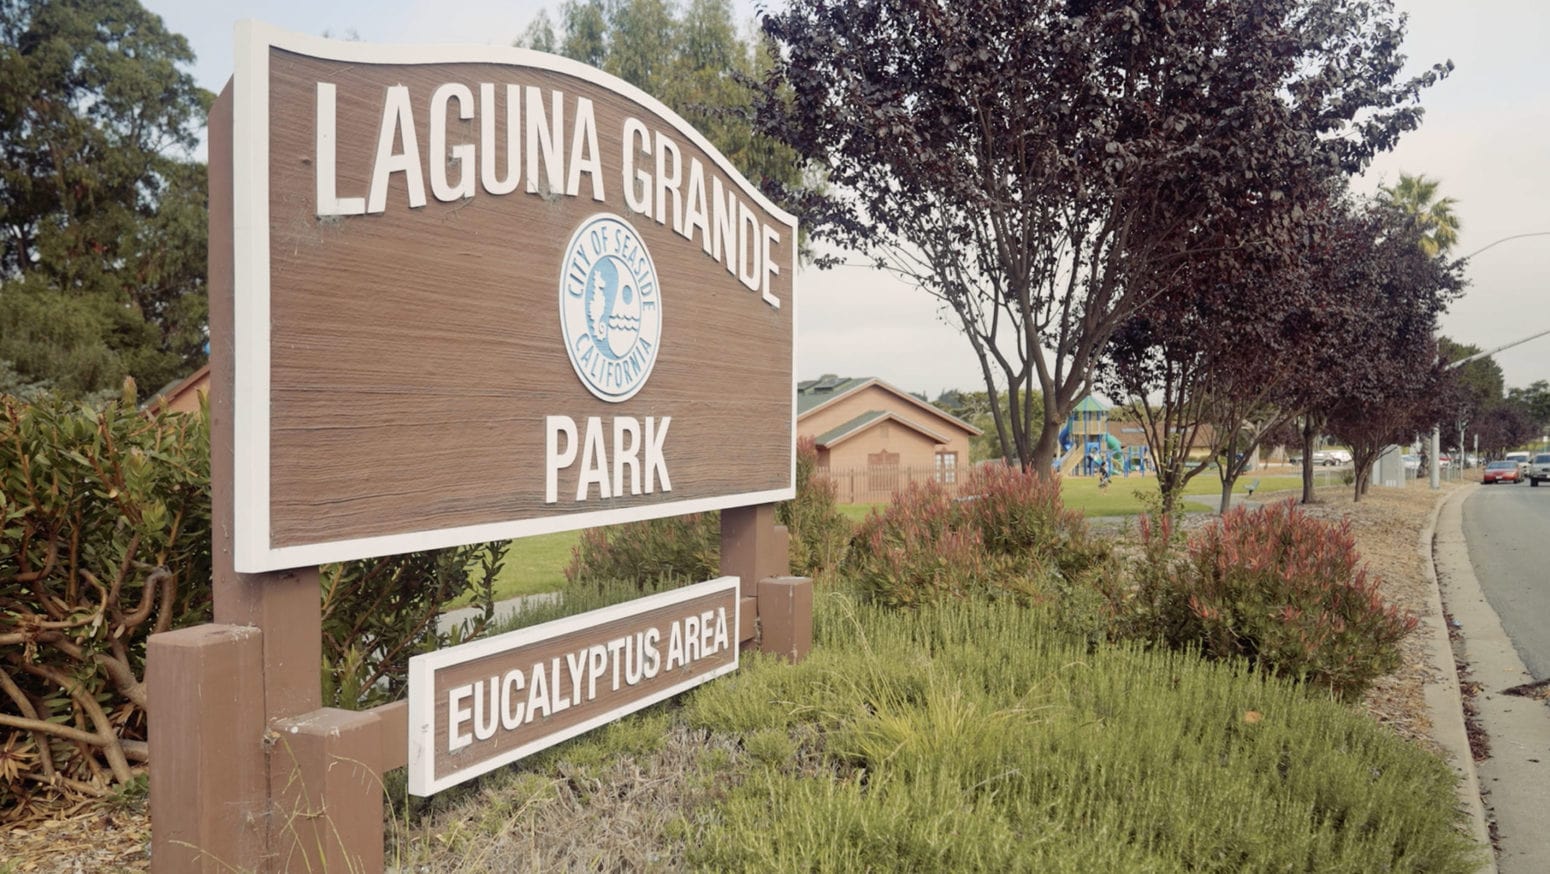 Laguna Grande Park Eucalyptus Area Sign